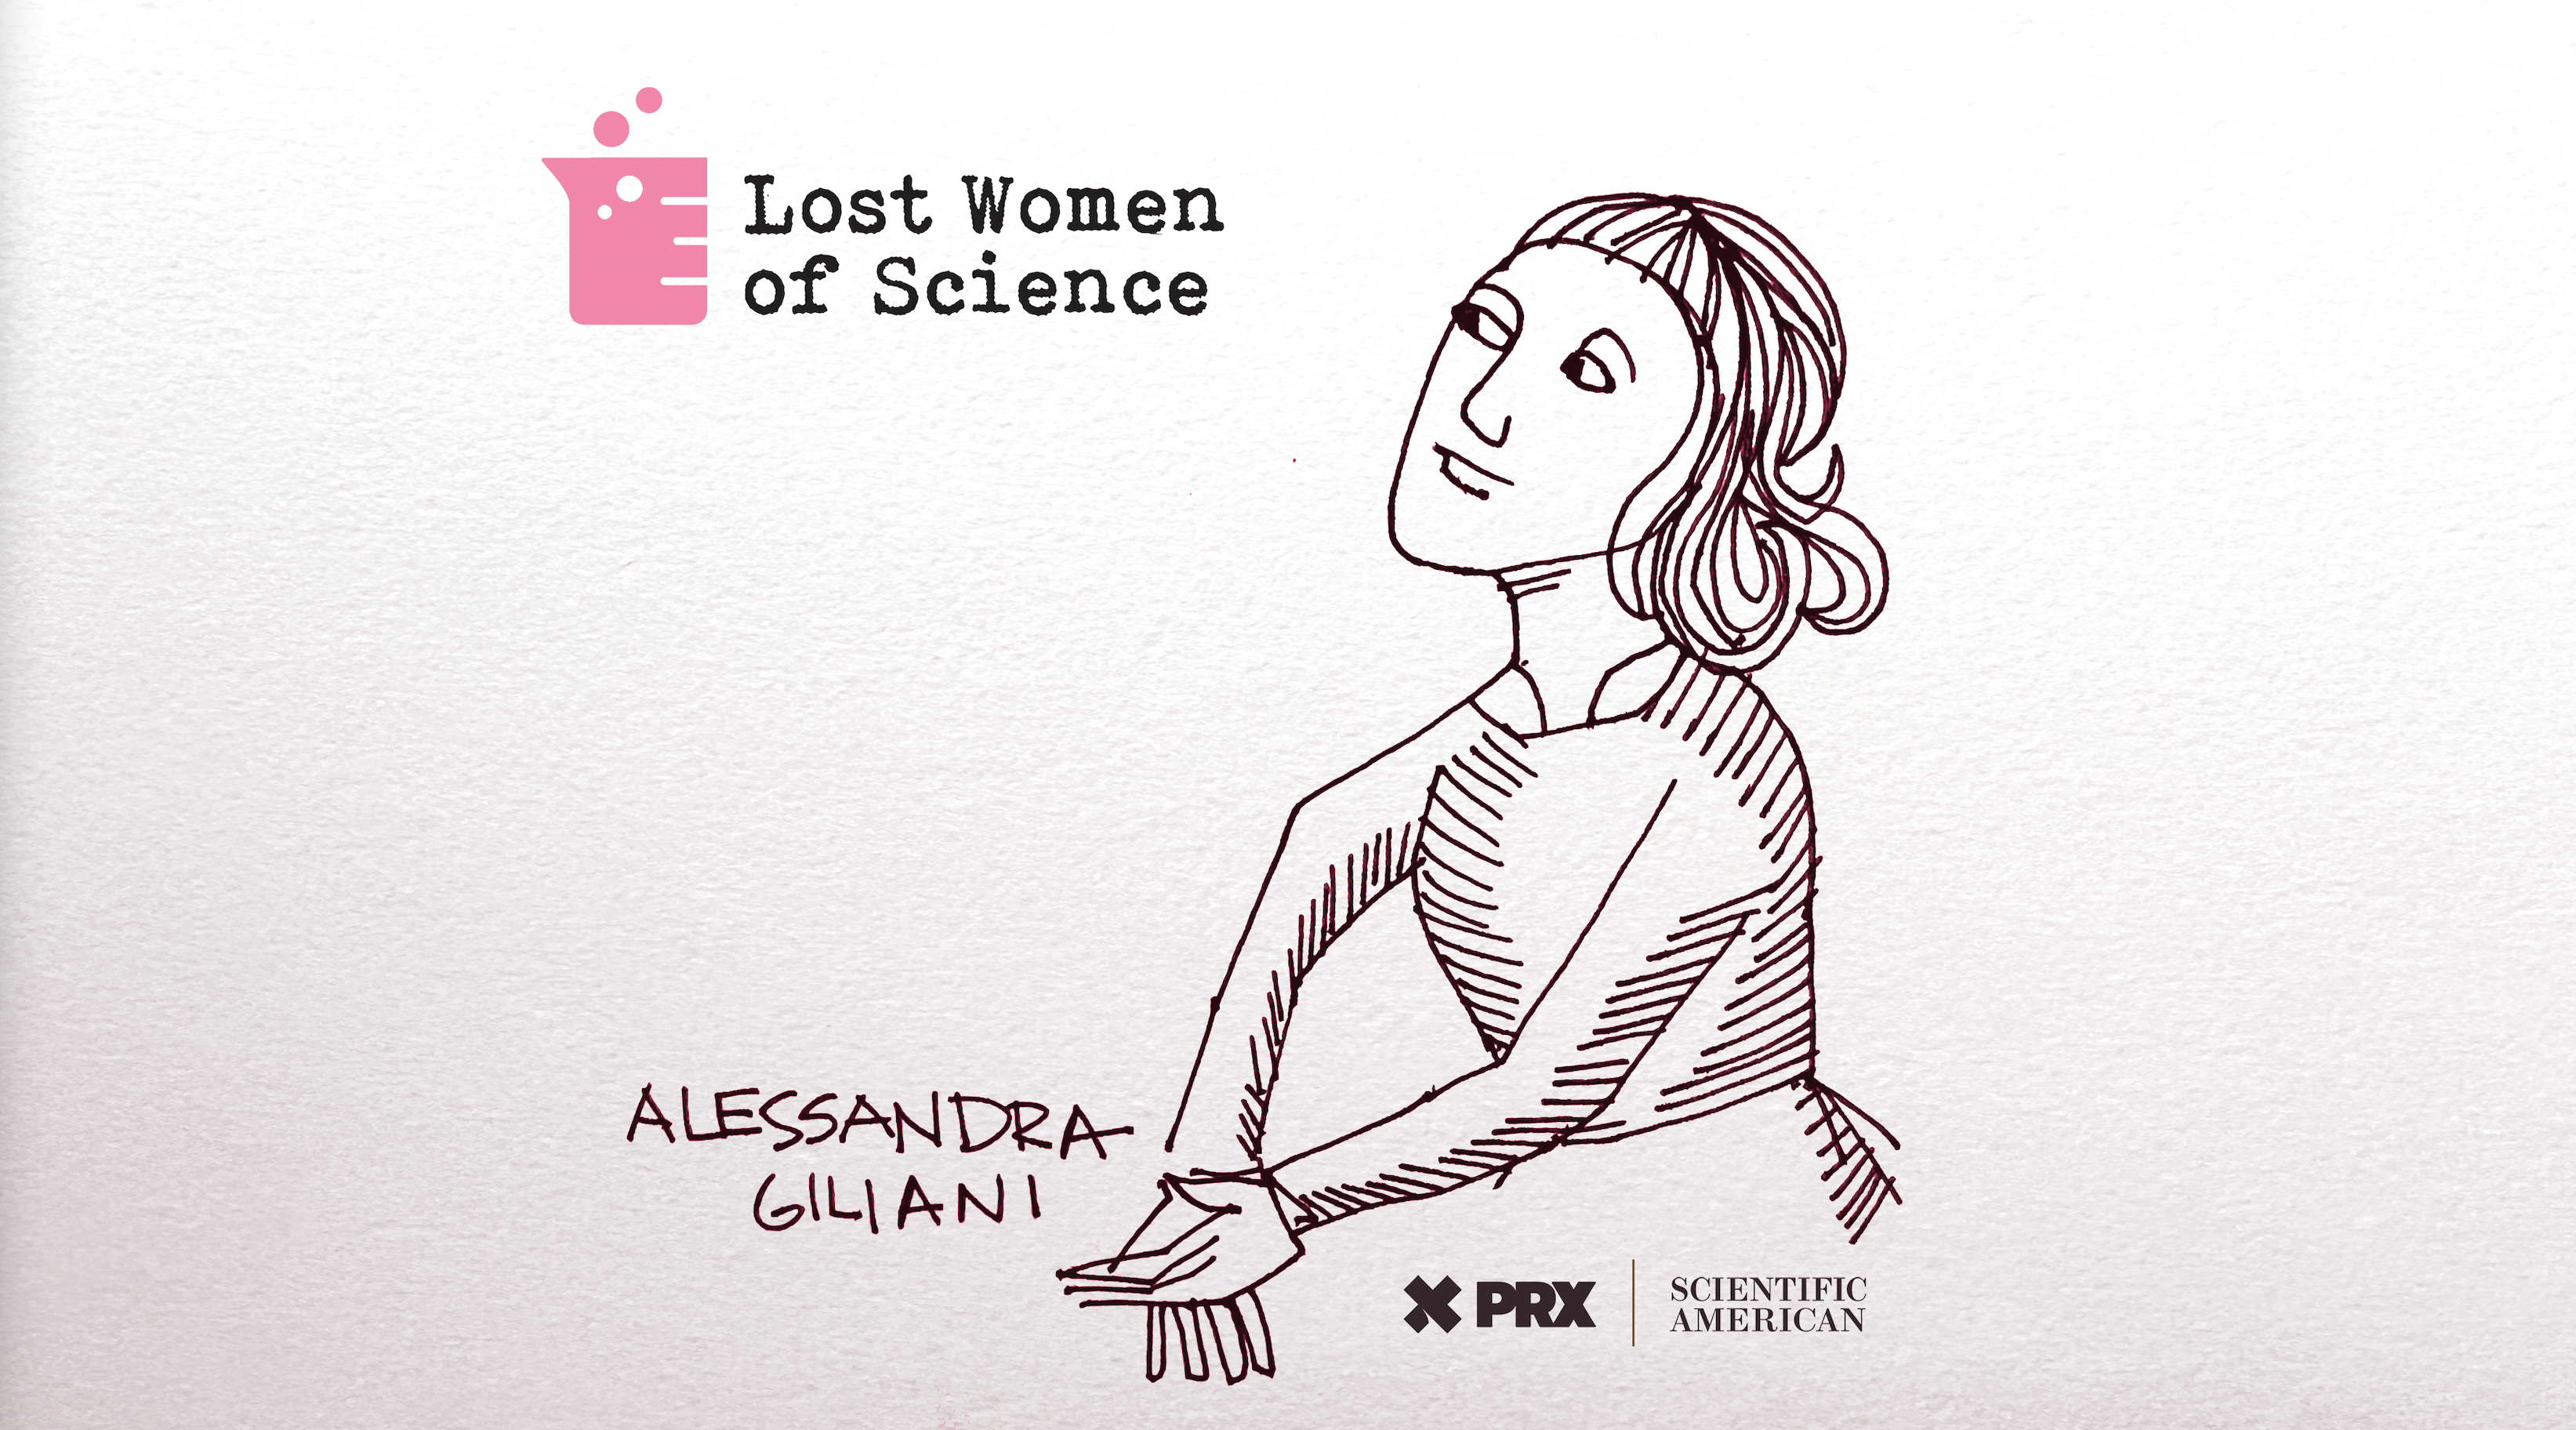 Alessandra Giliani, 14. Yüzyıl Genç Anatomisti Kimdi?